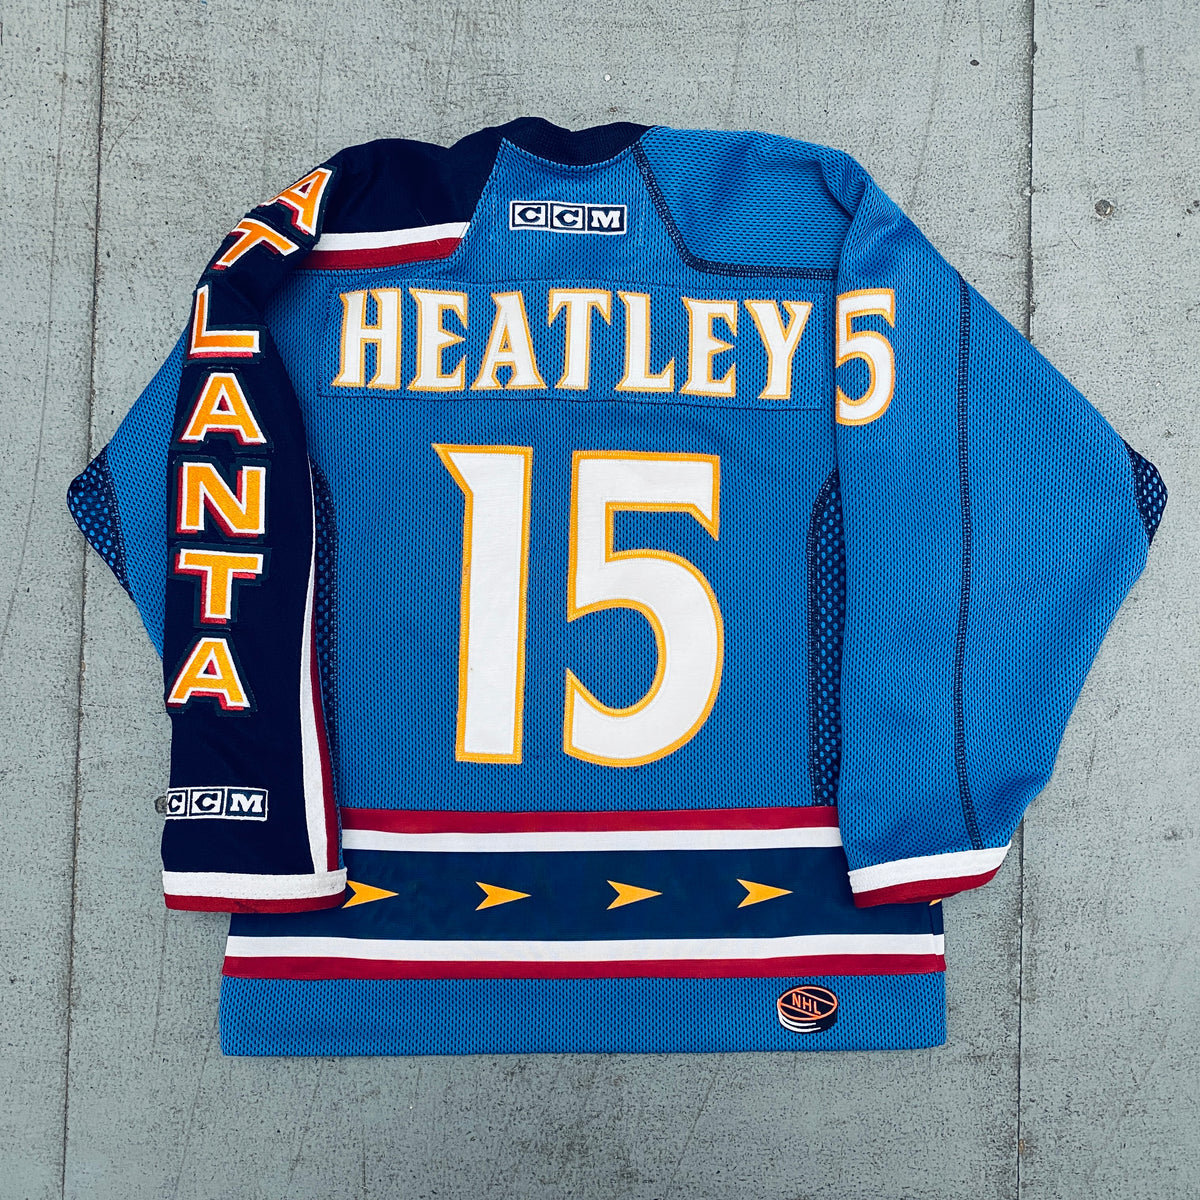 Atlanta Thrashers 2003-2004 Dany Heatley NHL Hockey Jersey (56/XXL)